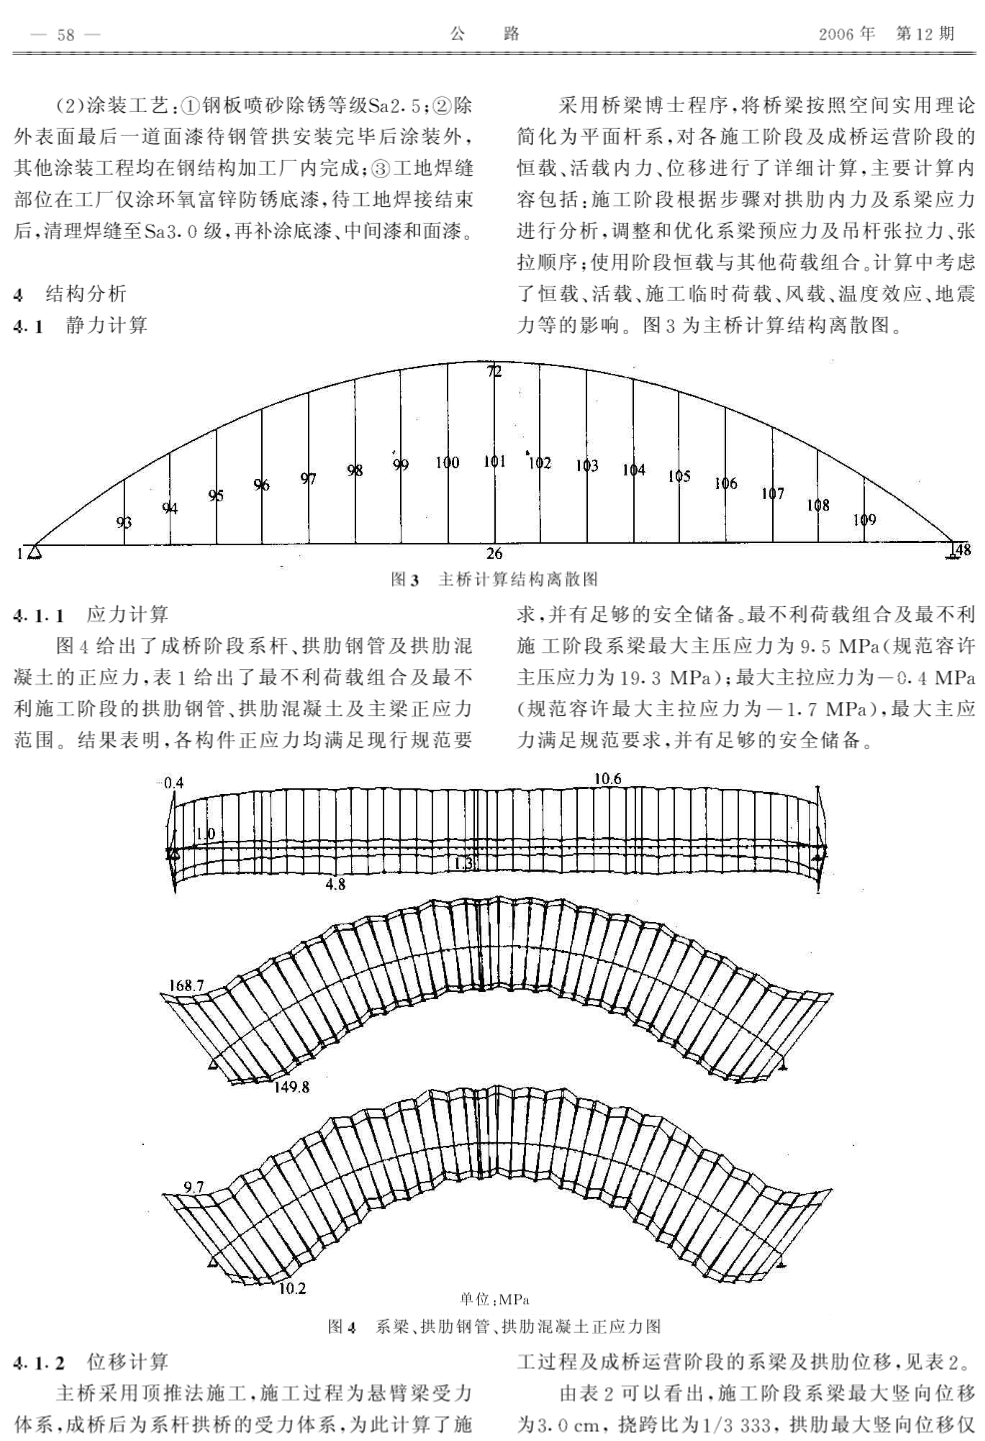 顶推法施工102m跨径钢管混凝土拱桥的设计与研究.pdf本文上传自路桥吾爱-lq52.com-图二